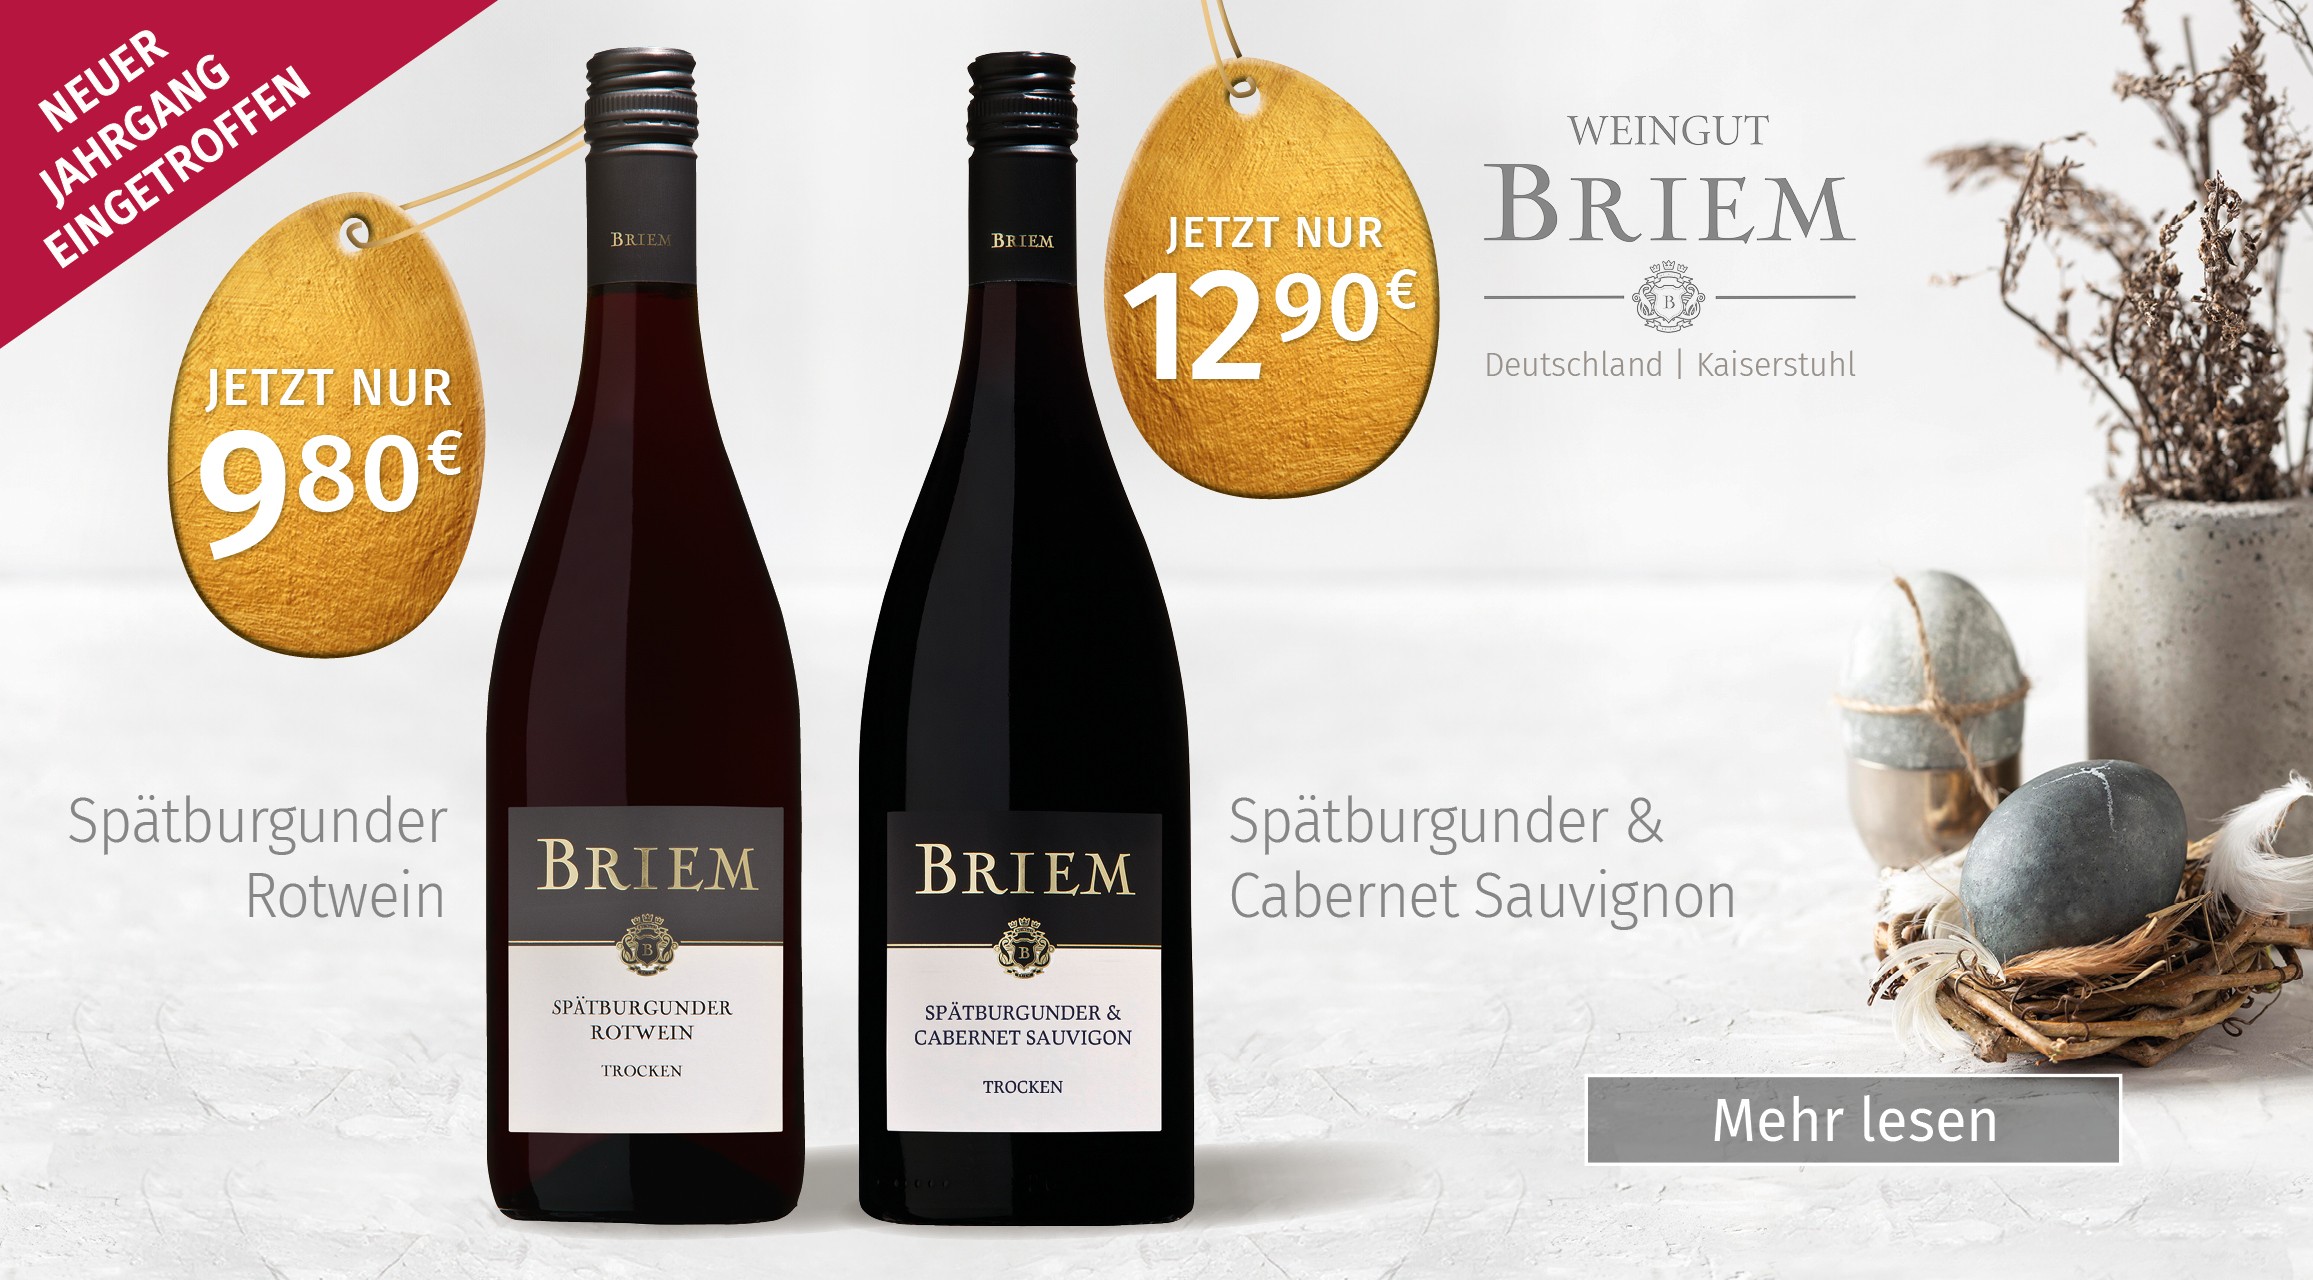 Wein Cabinet Briem, Bonn, Weinpräsente, Spätburgunder & Cabernet Sauvignon